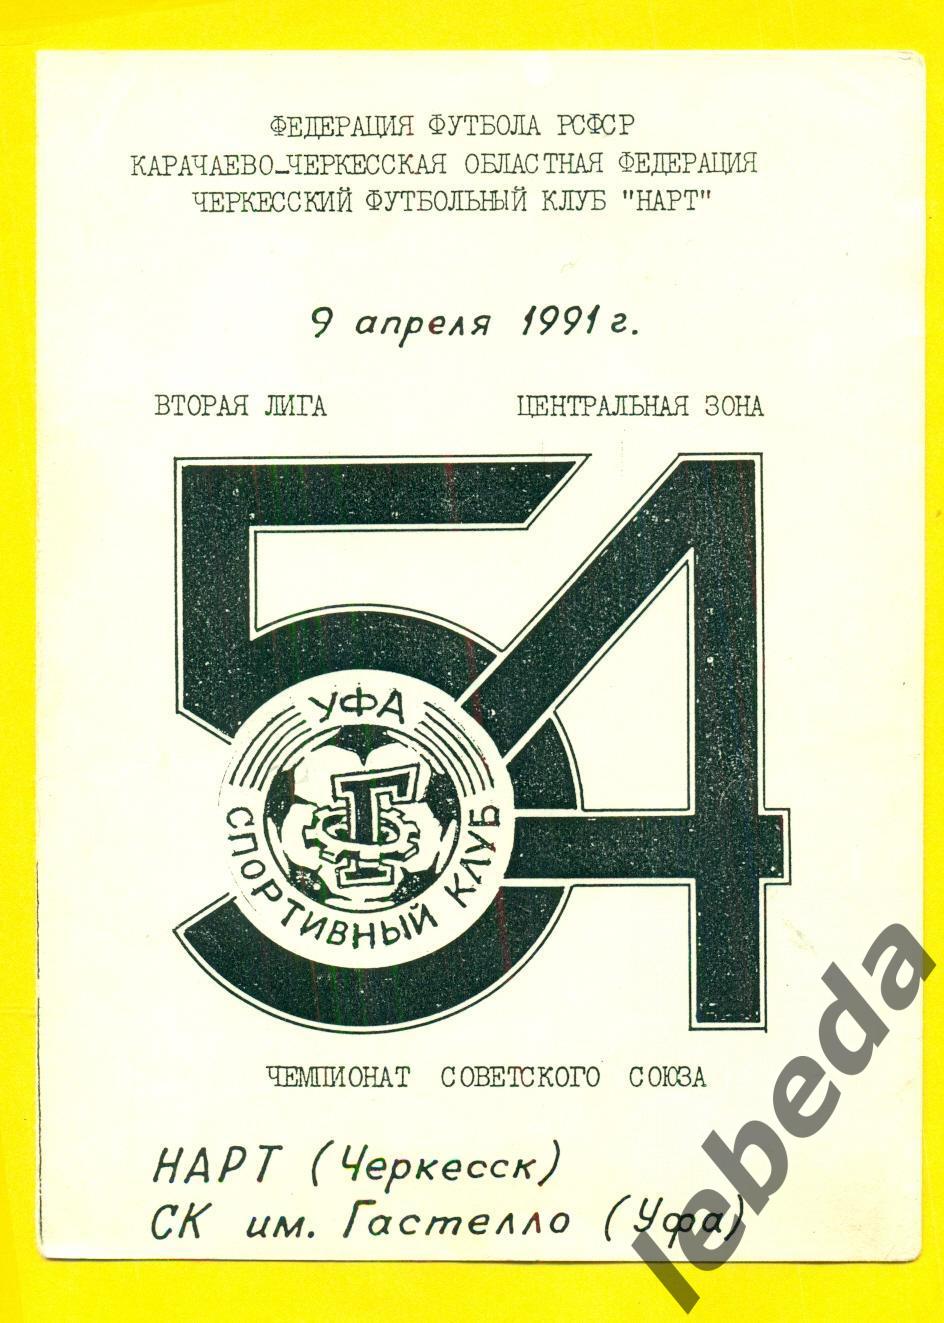 Нарт Черкеск - Гастелло Уфа - 1991 г.(09.04.91.)